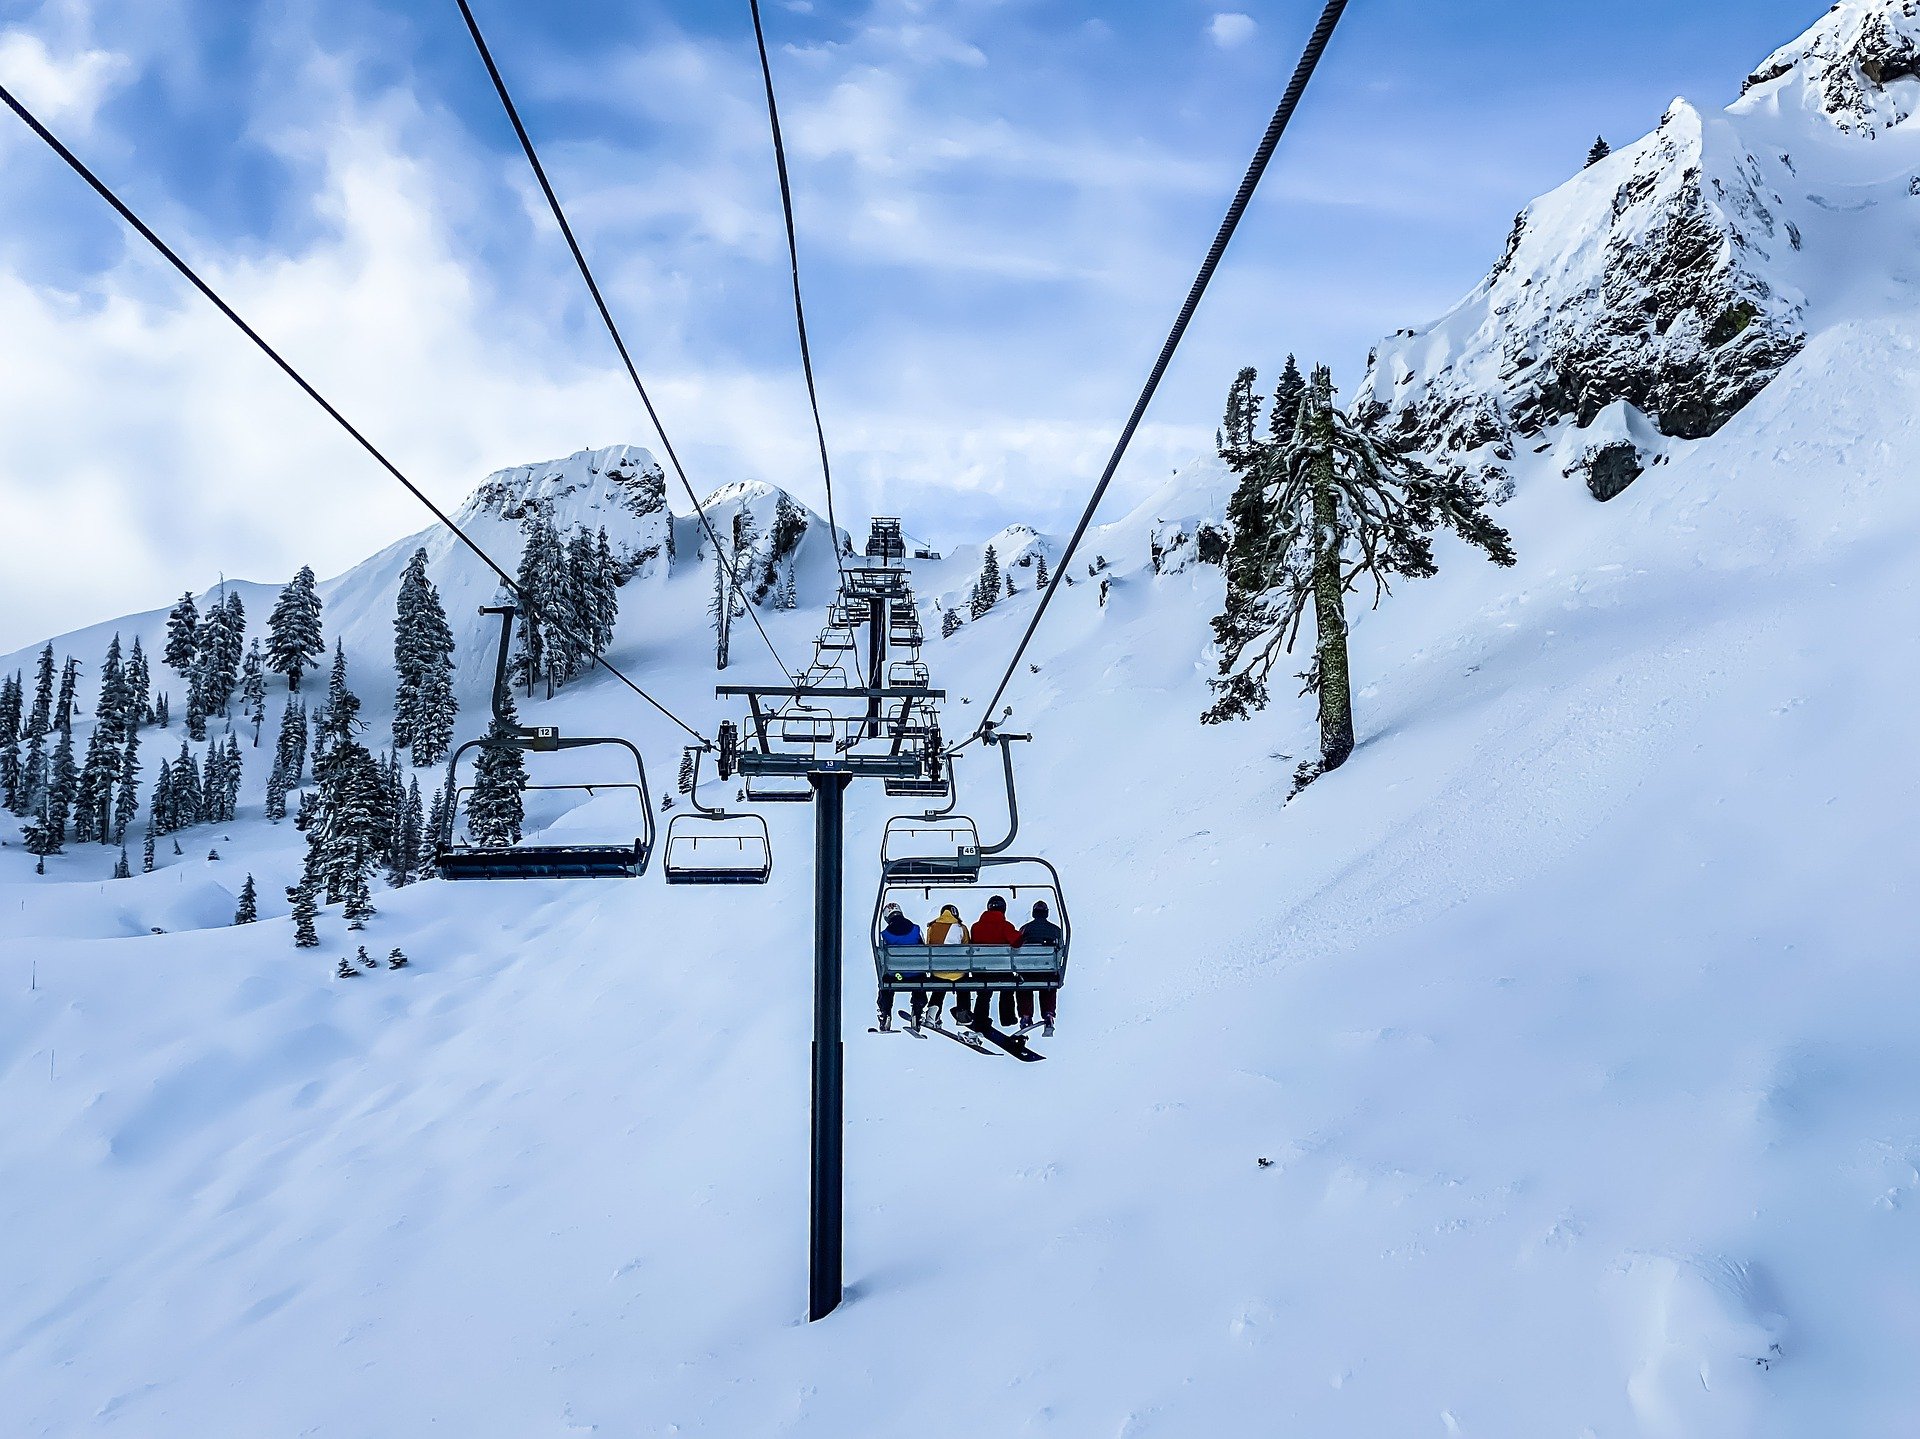 Turismo publica una guía de recomendaciones contra la COVID-19 para las estaciones de esquí